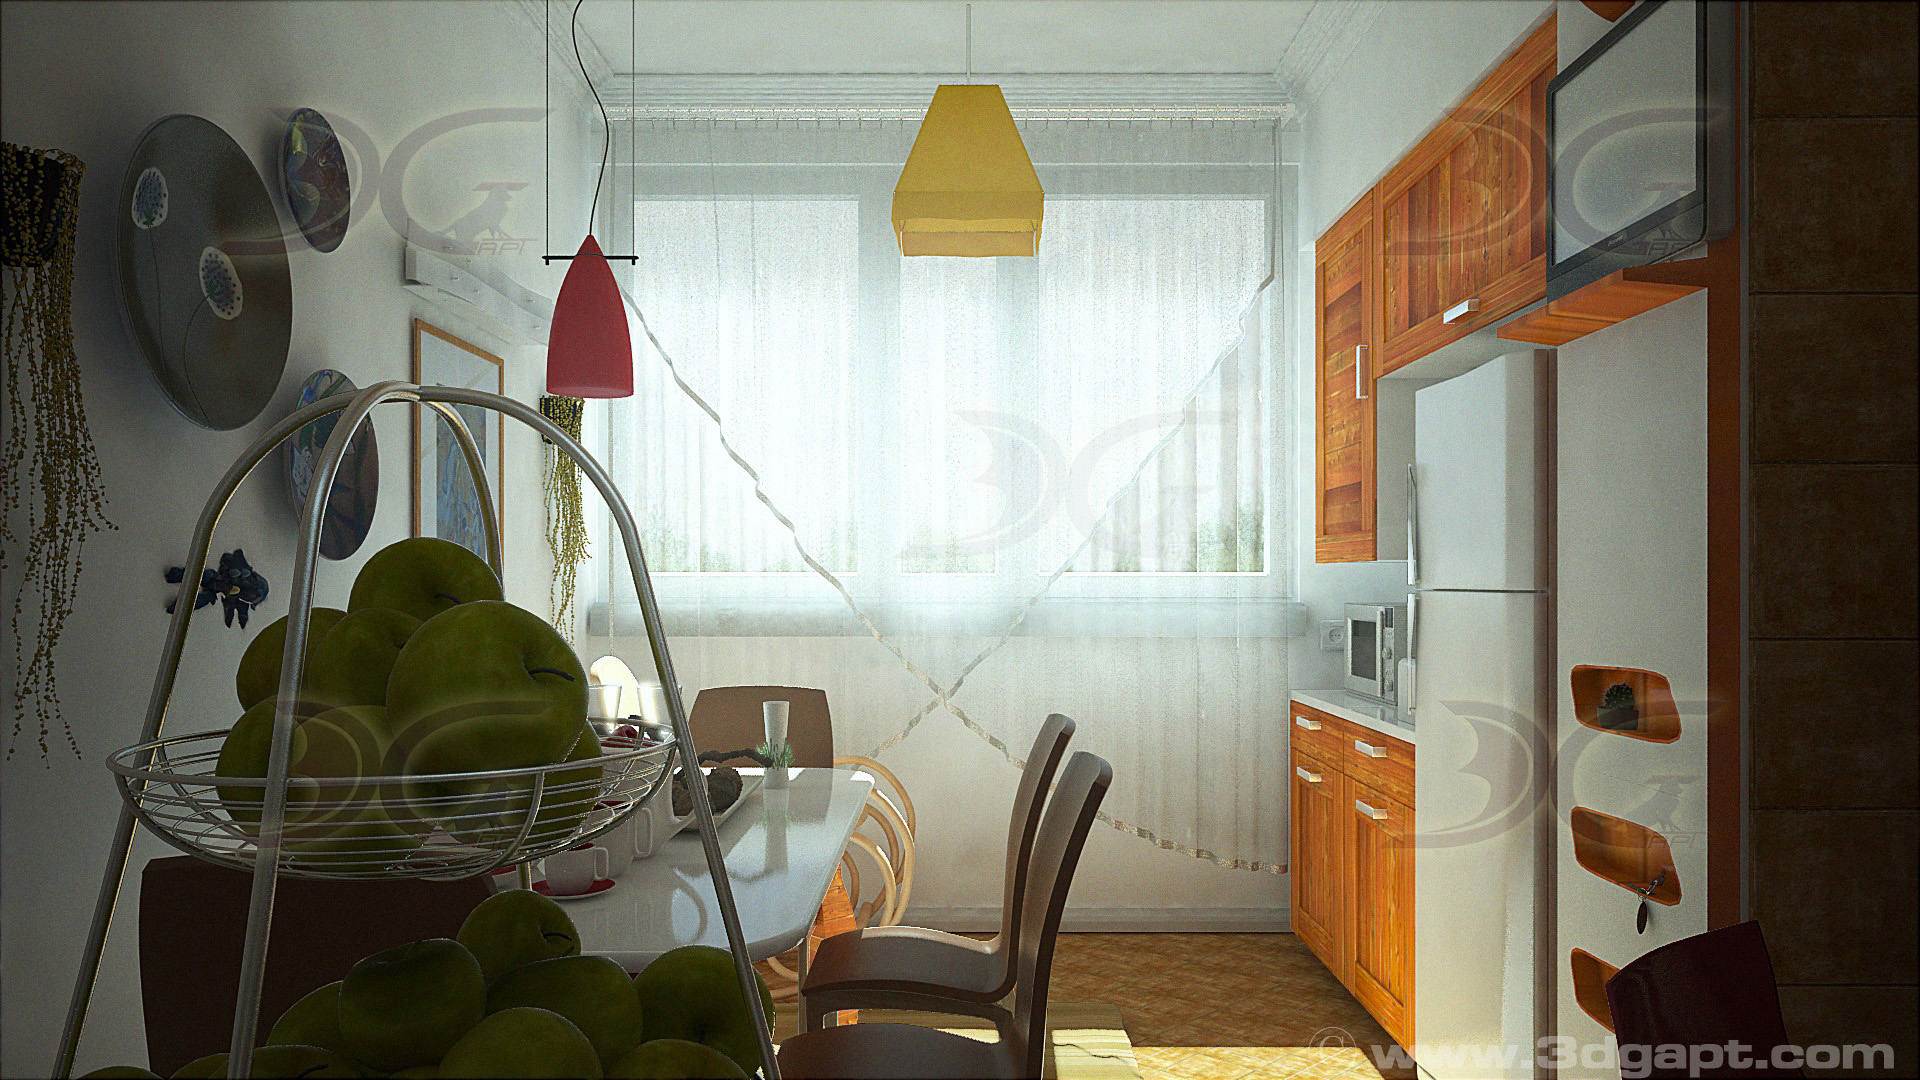 Architecture Interior Kitchen 3versions 15